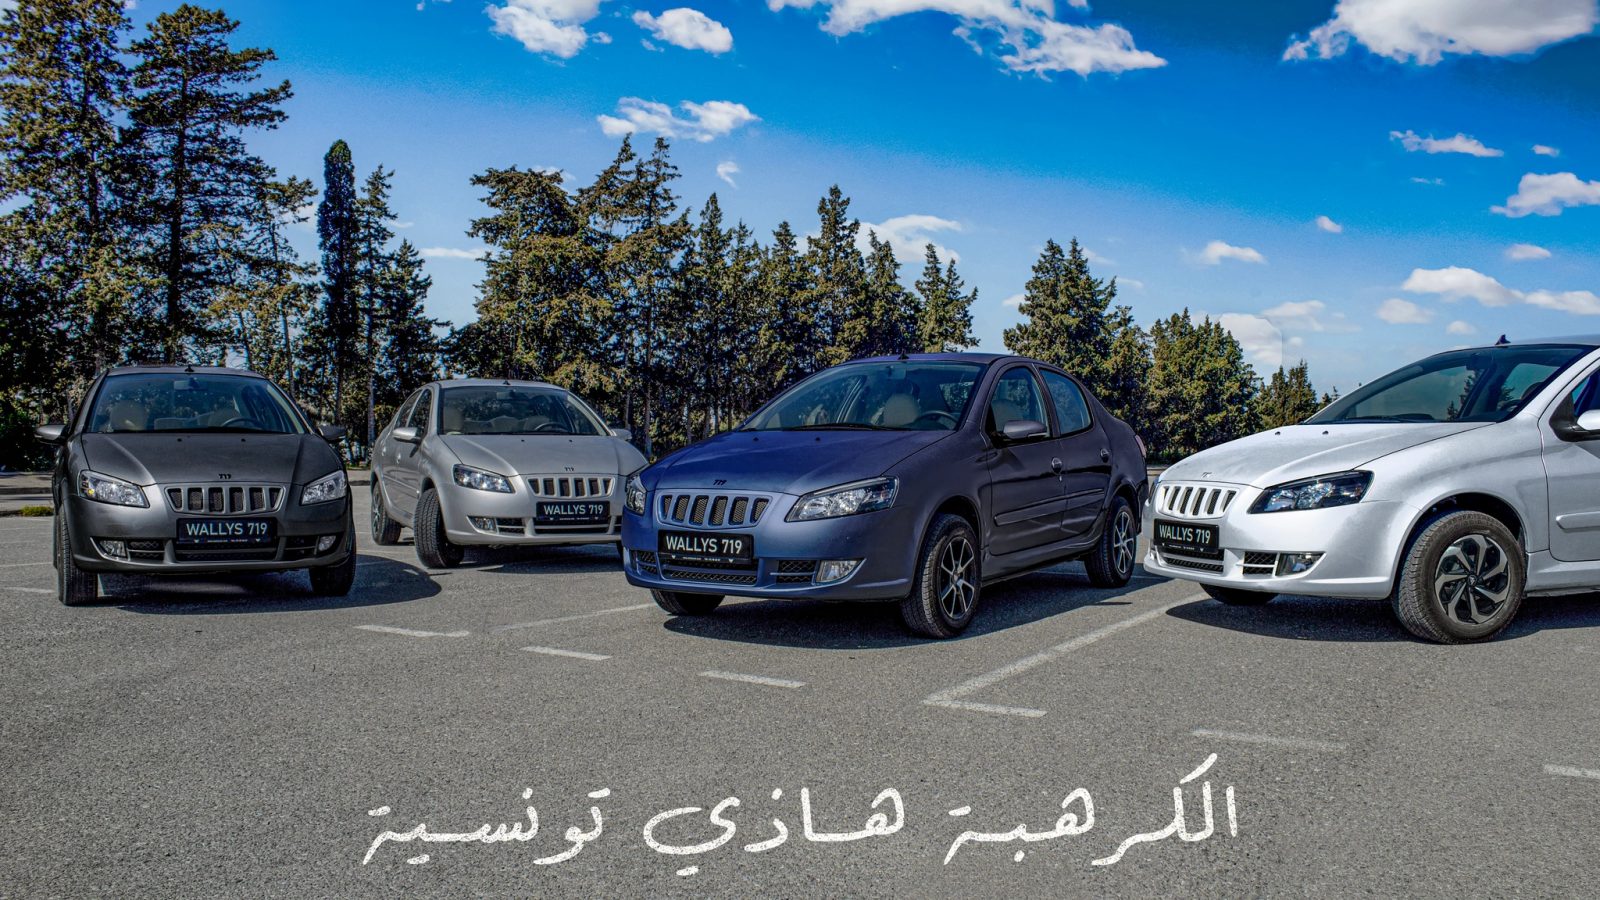 حقيقة سرقة شركة مغربية لتصميم سيارة “واليس” التونسية ( خاص بـ”تونس الان”)